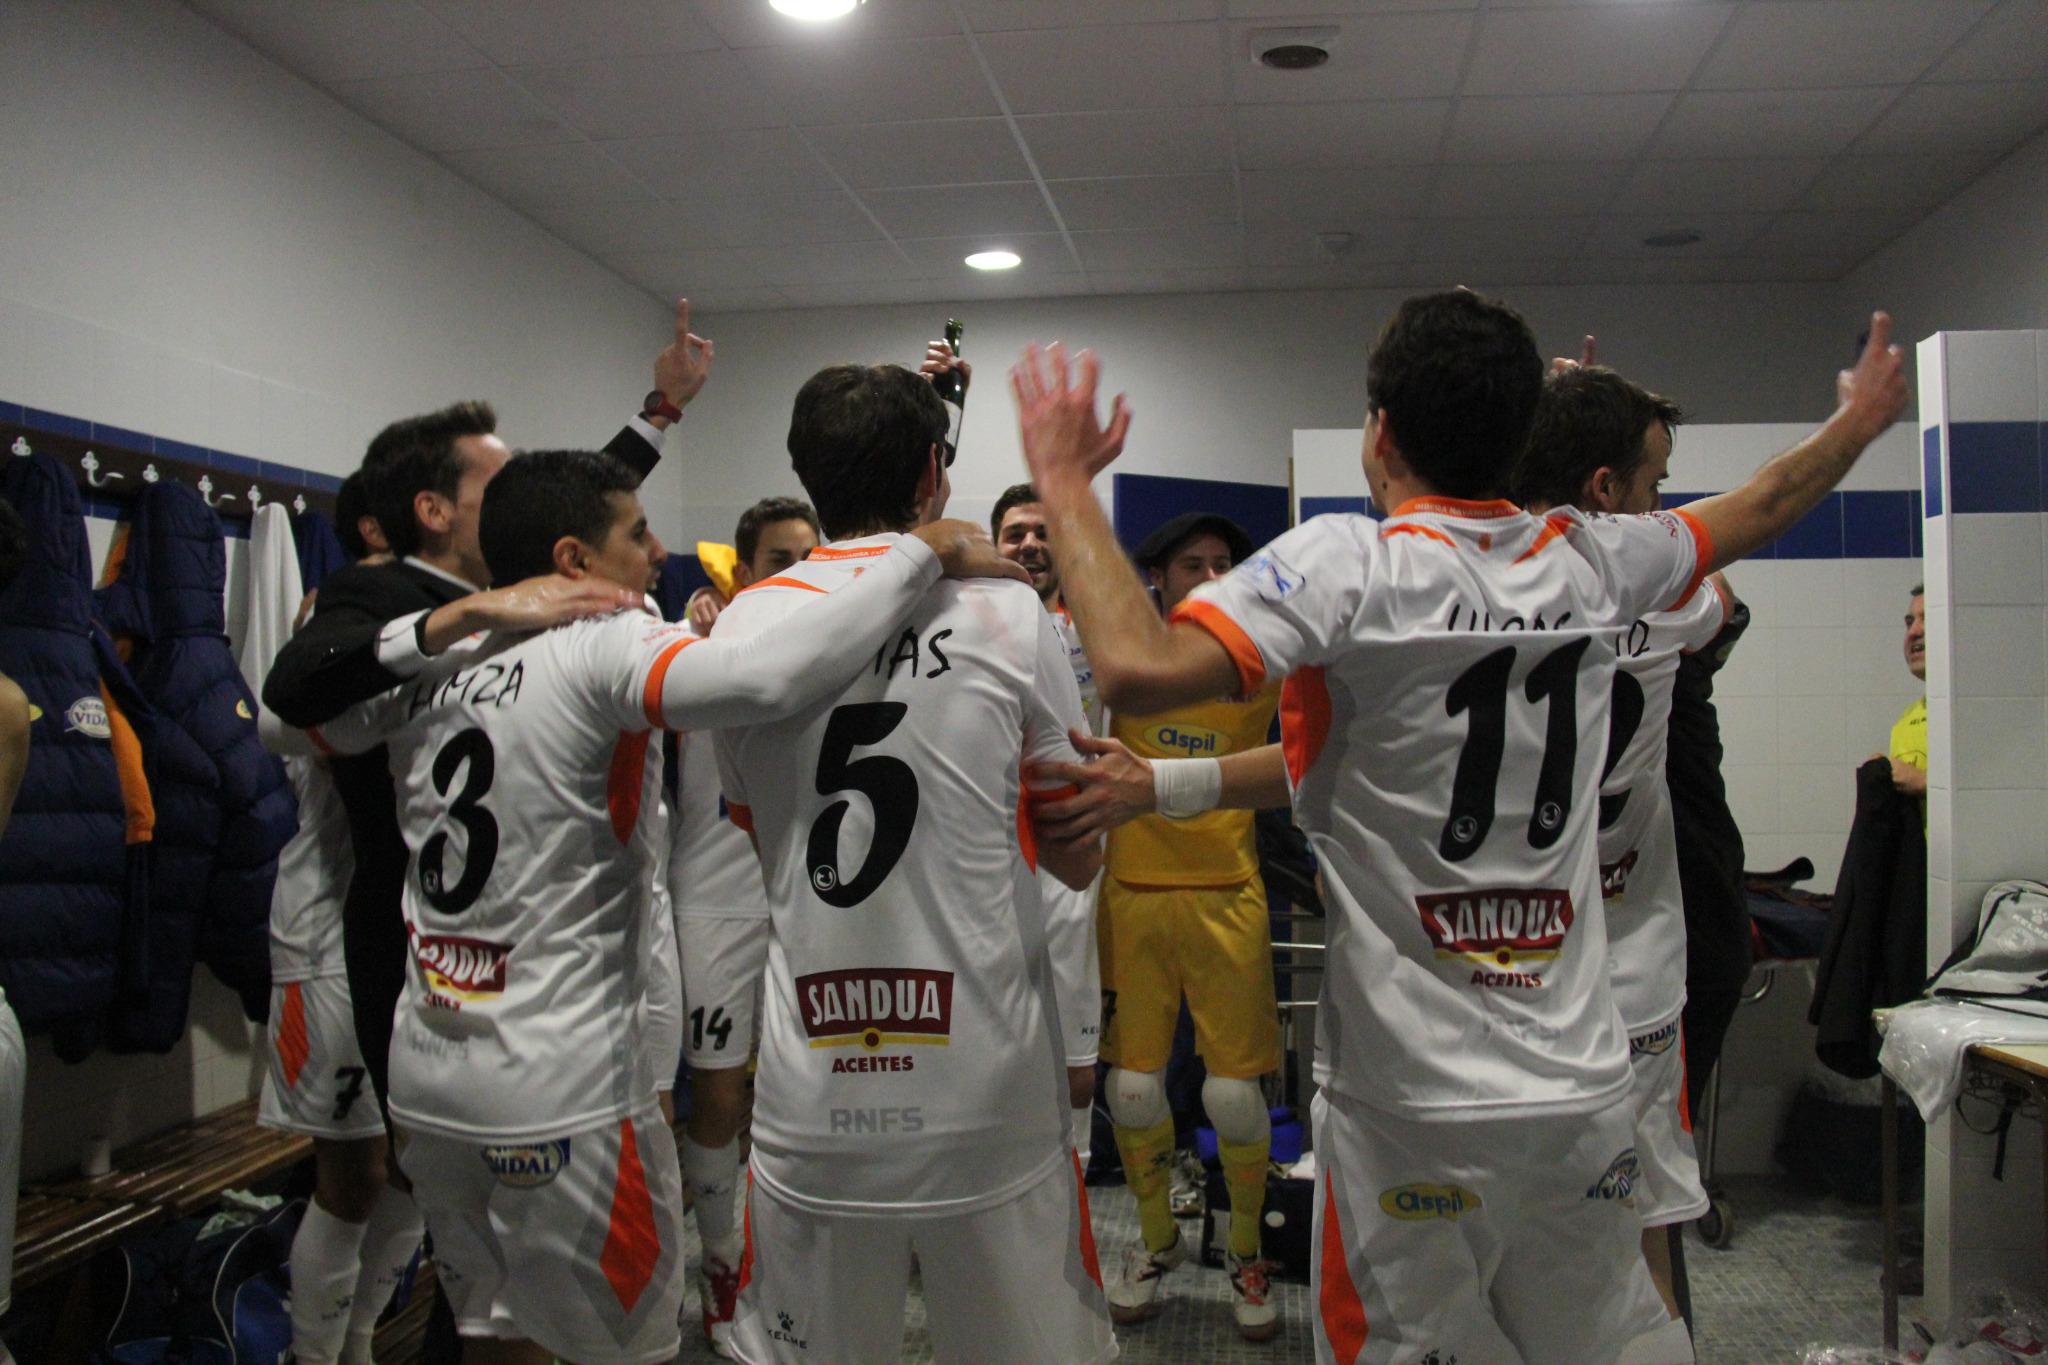 Jugadores del Ribera Navarra celebran la clasificación en el vestuario. |Foto: @RiberaNavarraFS